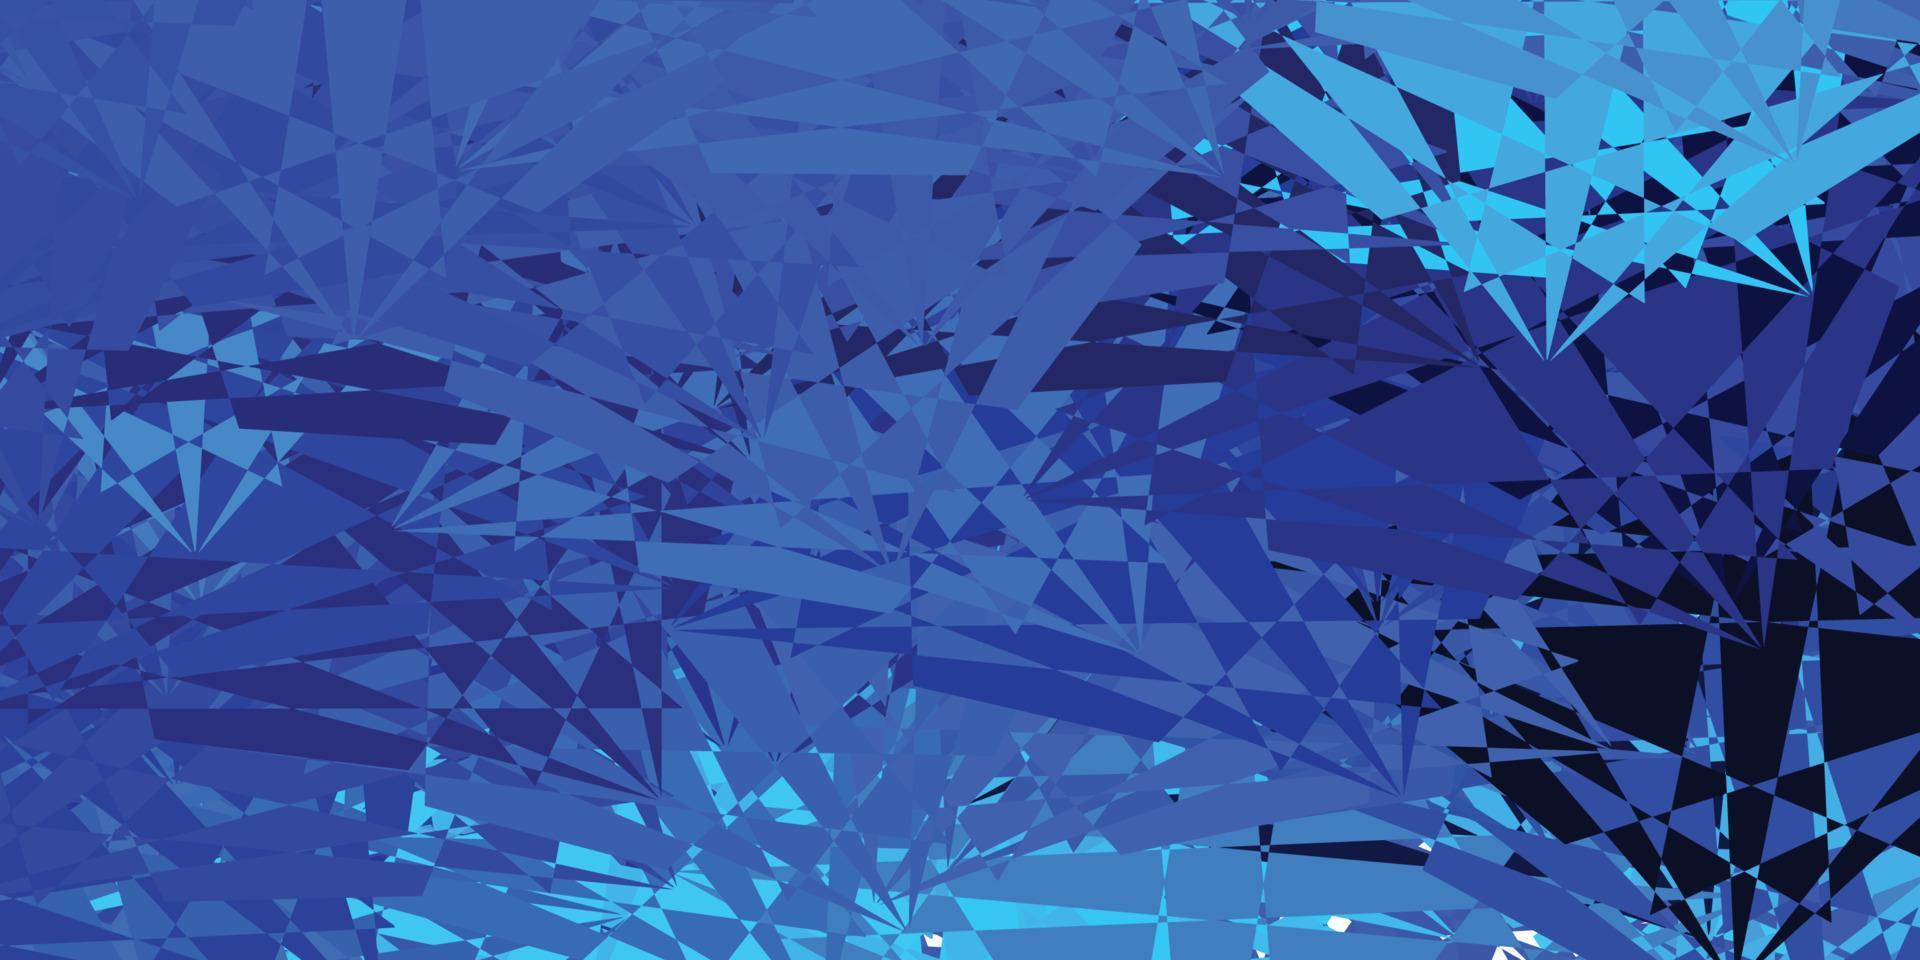 sfondo vettoriale azzurro con forme caotiche.